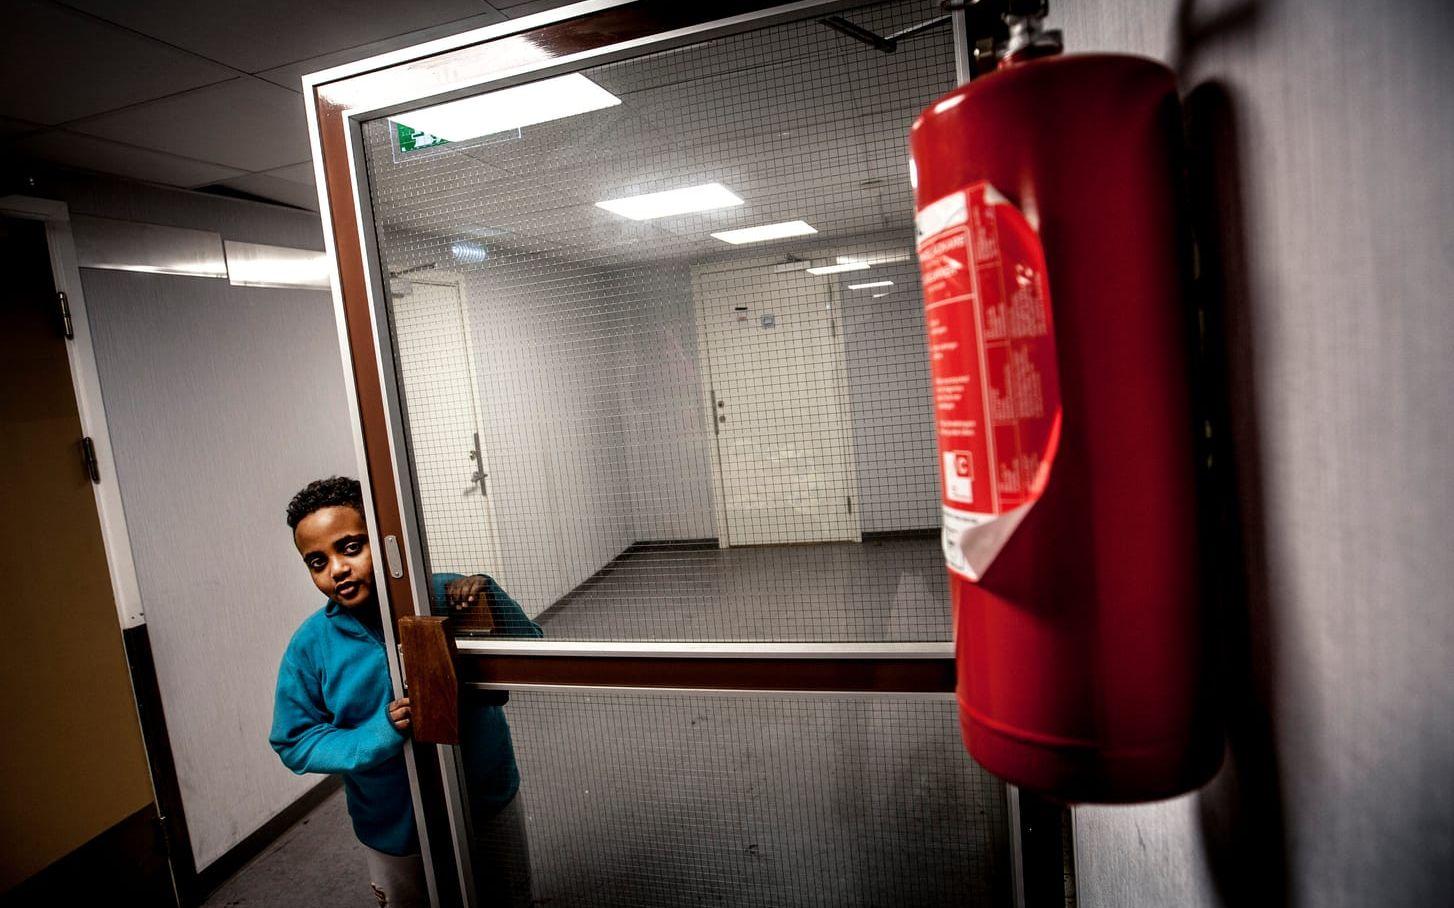 BLEV RÄDD. 10-årige Elyud från Eritrea har bott på asylboendet Restad gård i Vänersborg i ett år och åtta månader. "Jag blev jätterädd i natt när det brann", säger han.  Foto: Joachim Nywall